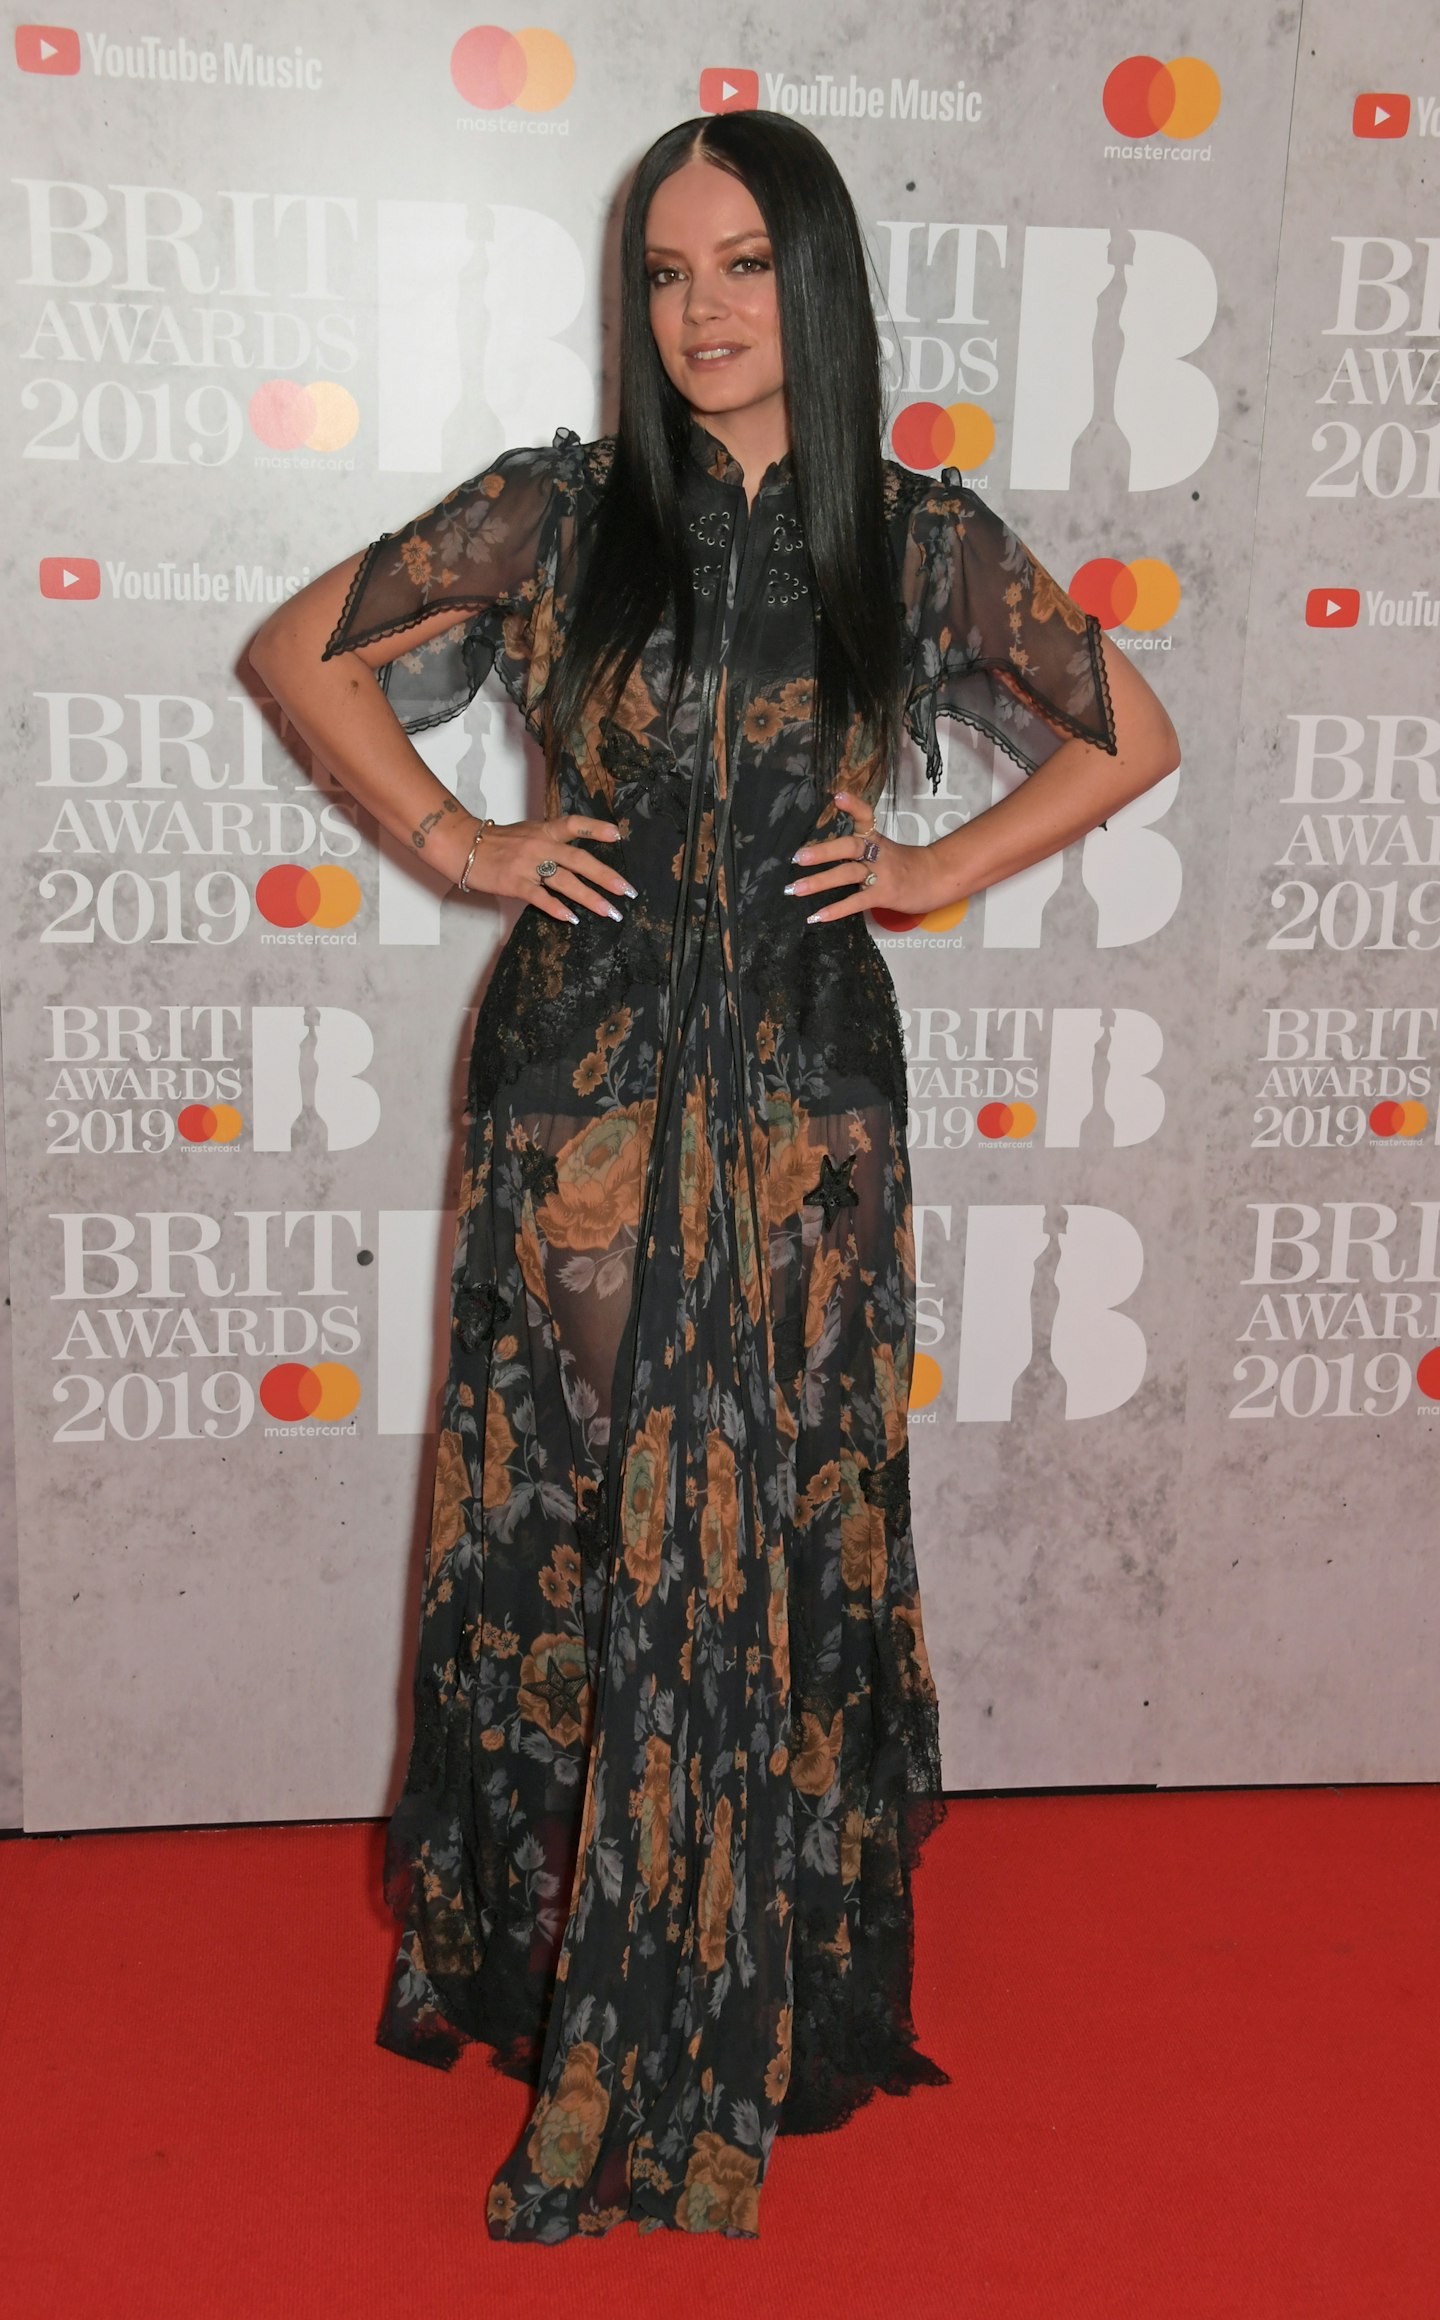 Brit Awards 2019 - Lily Allen